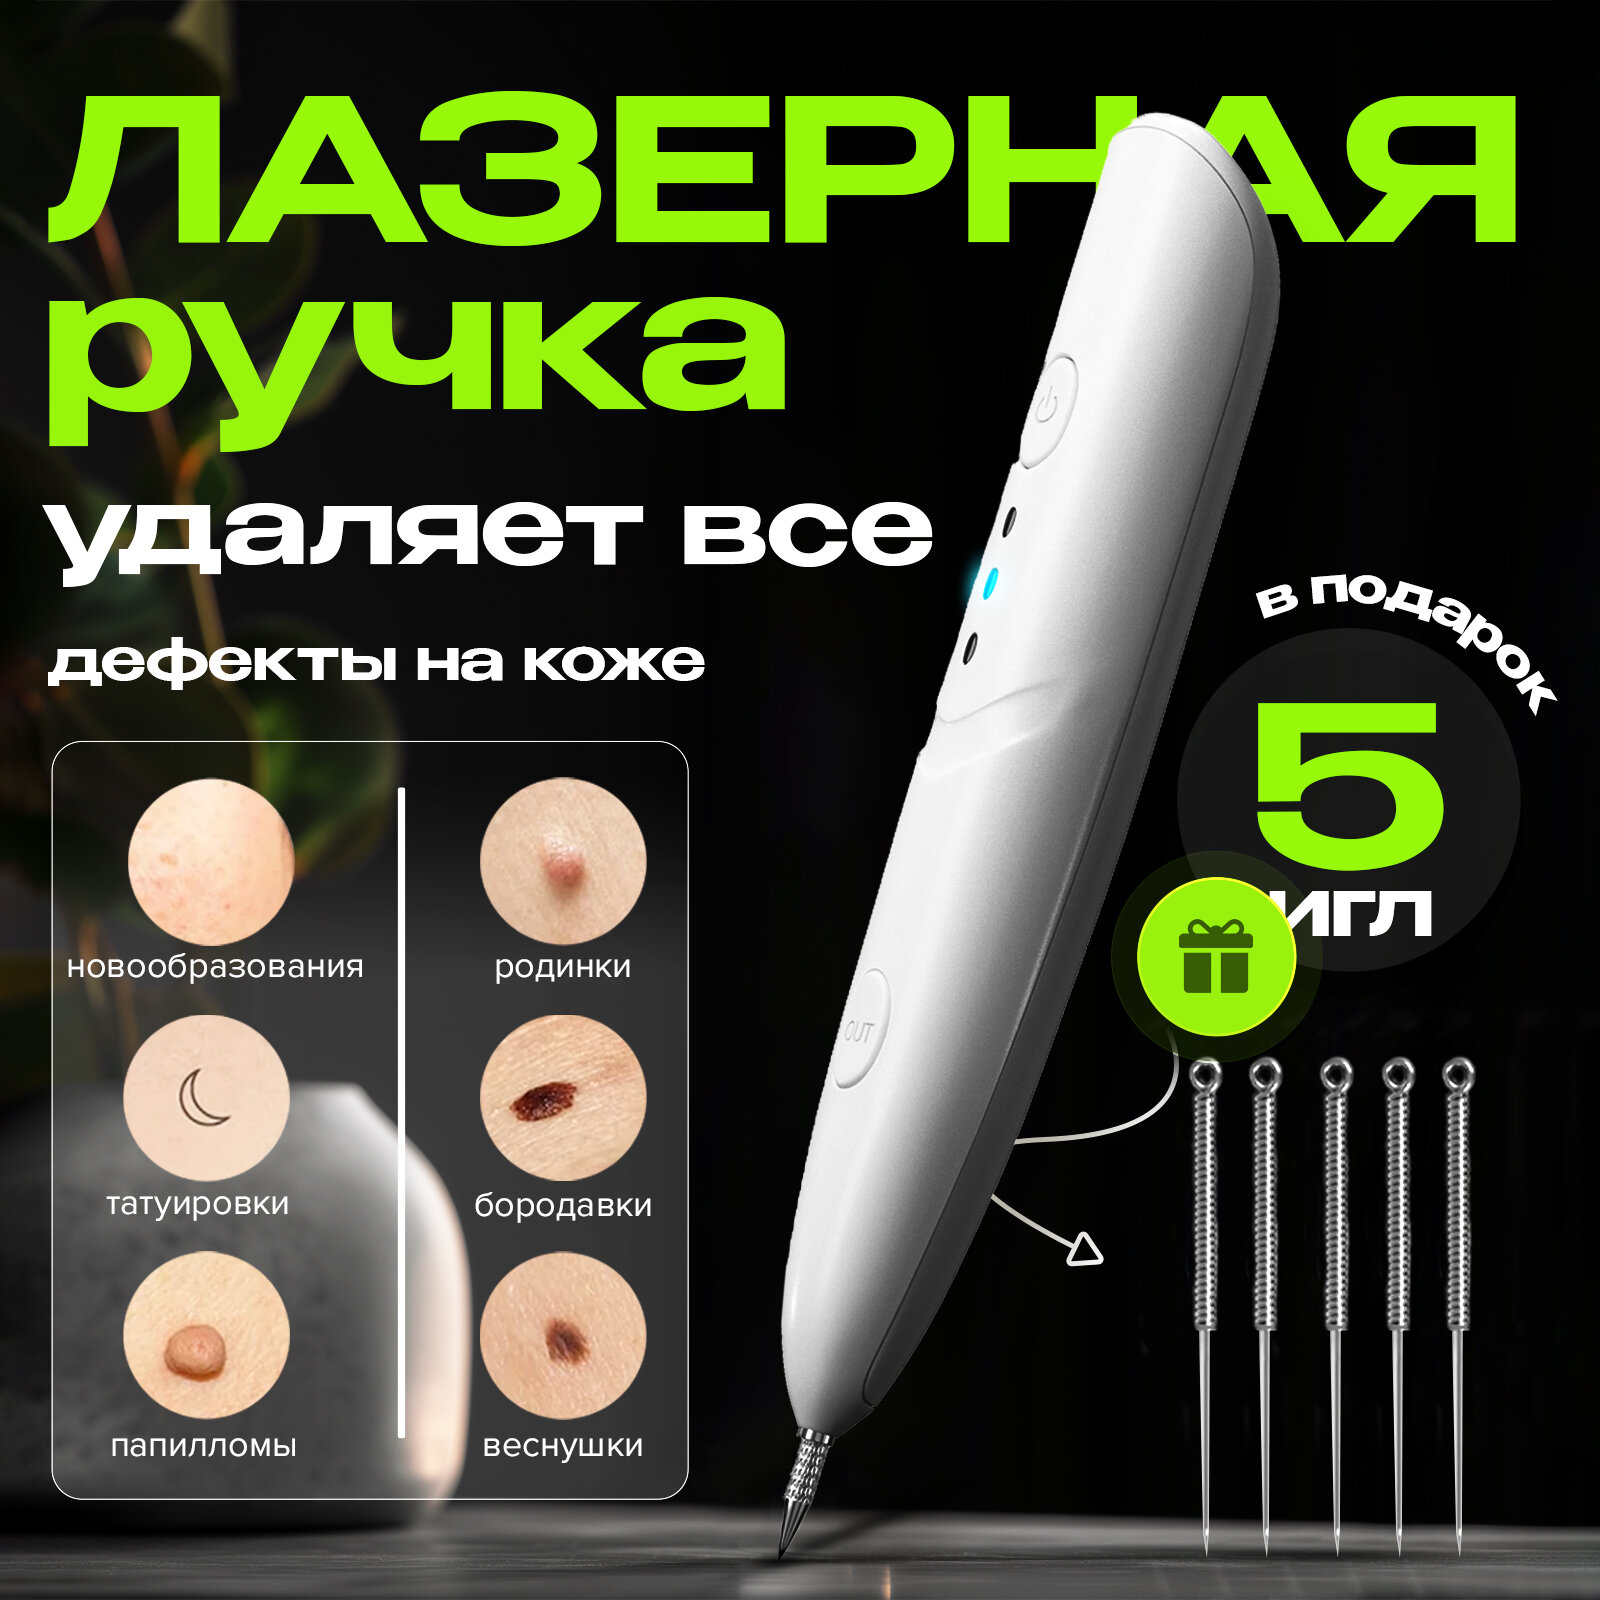 Плазменная ручка Evo Beauty косметологический аппарат для удаления папиллом. Иглы в комплекте